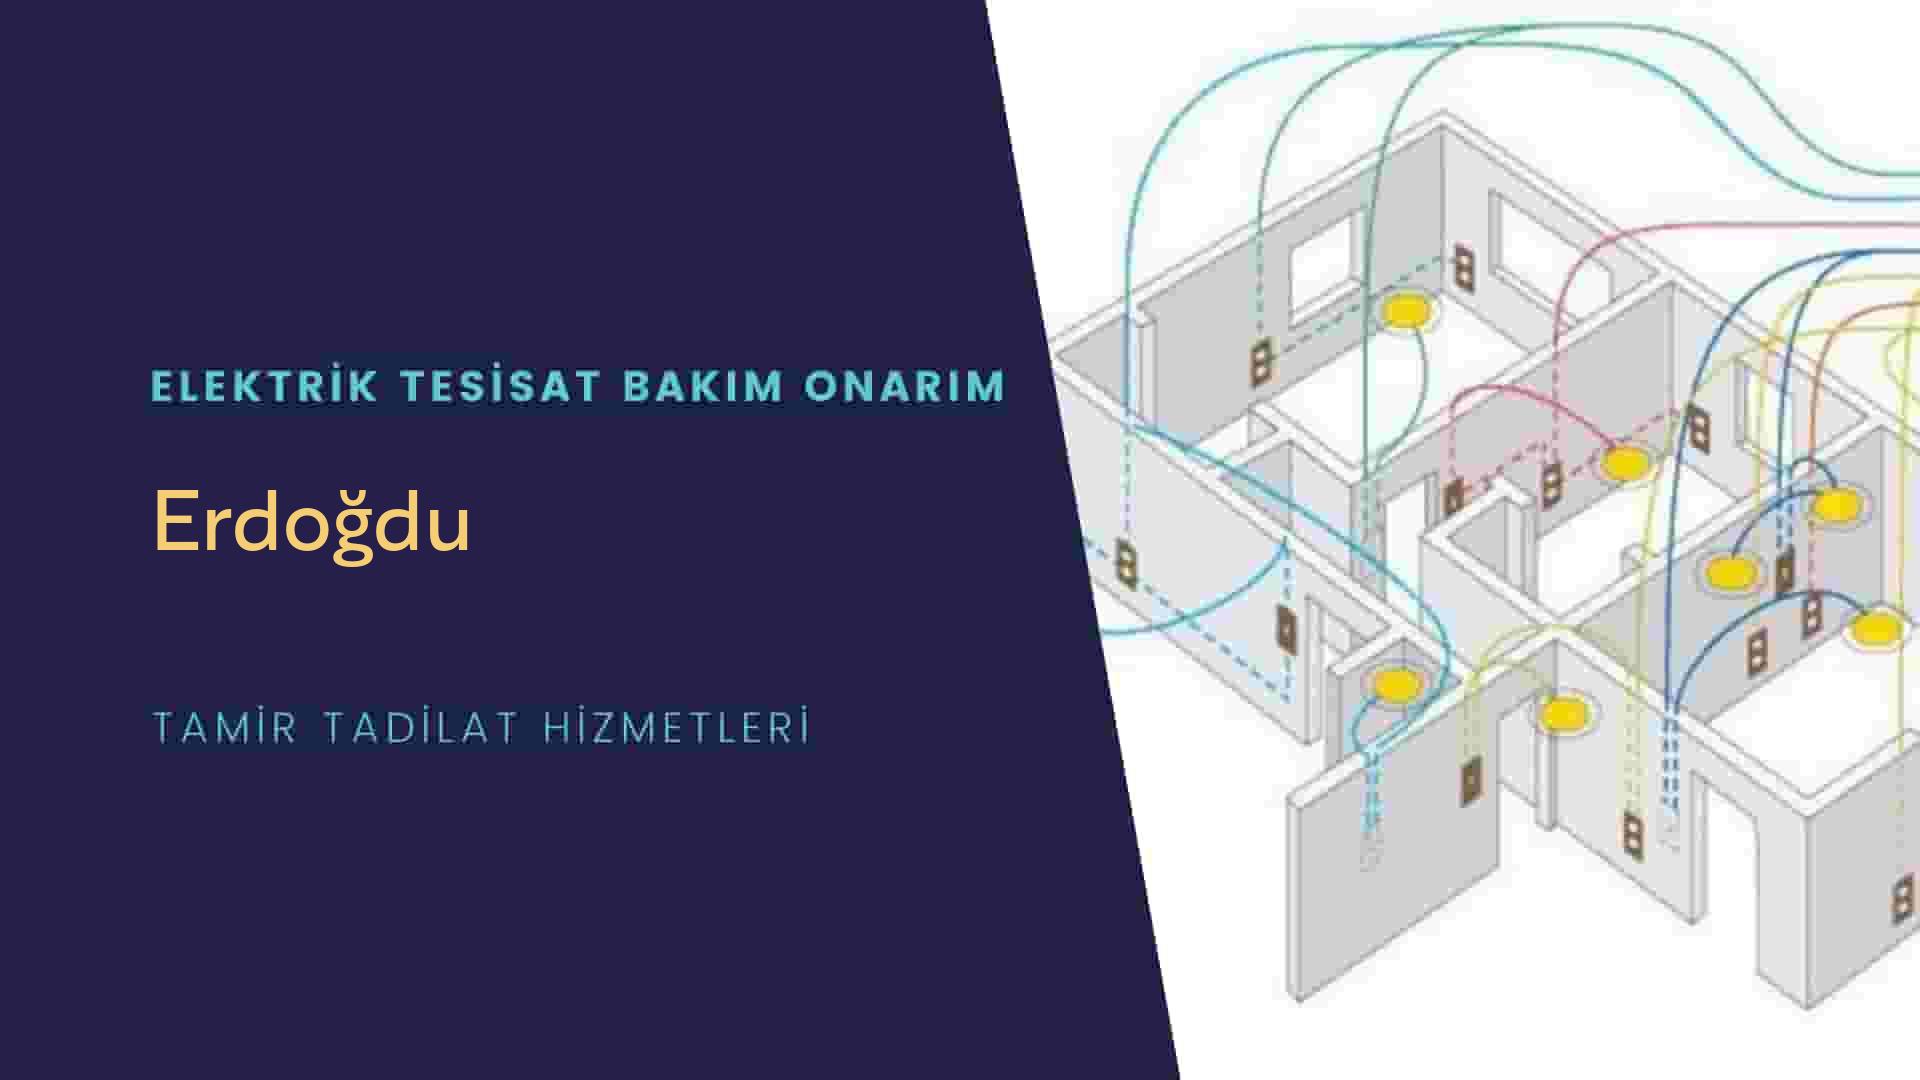 Erdoğdu'da elektrik tesisatı ustalarımı arıyorsunuz doğru adrestenizi Erdoğdu elektrik tesisatı ustalarımız 7/24 sizlere hizmet vermekten mutluluk duyar.